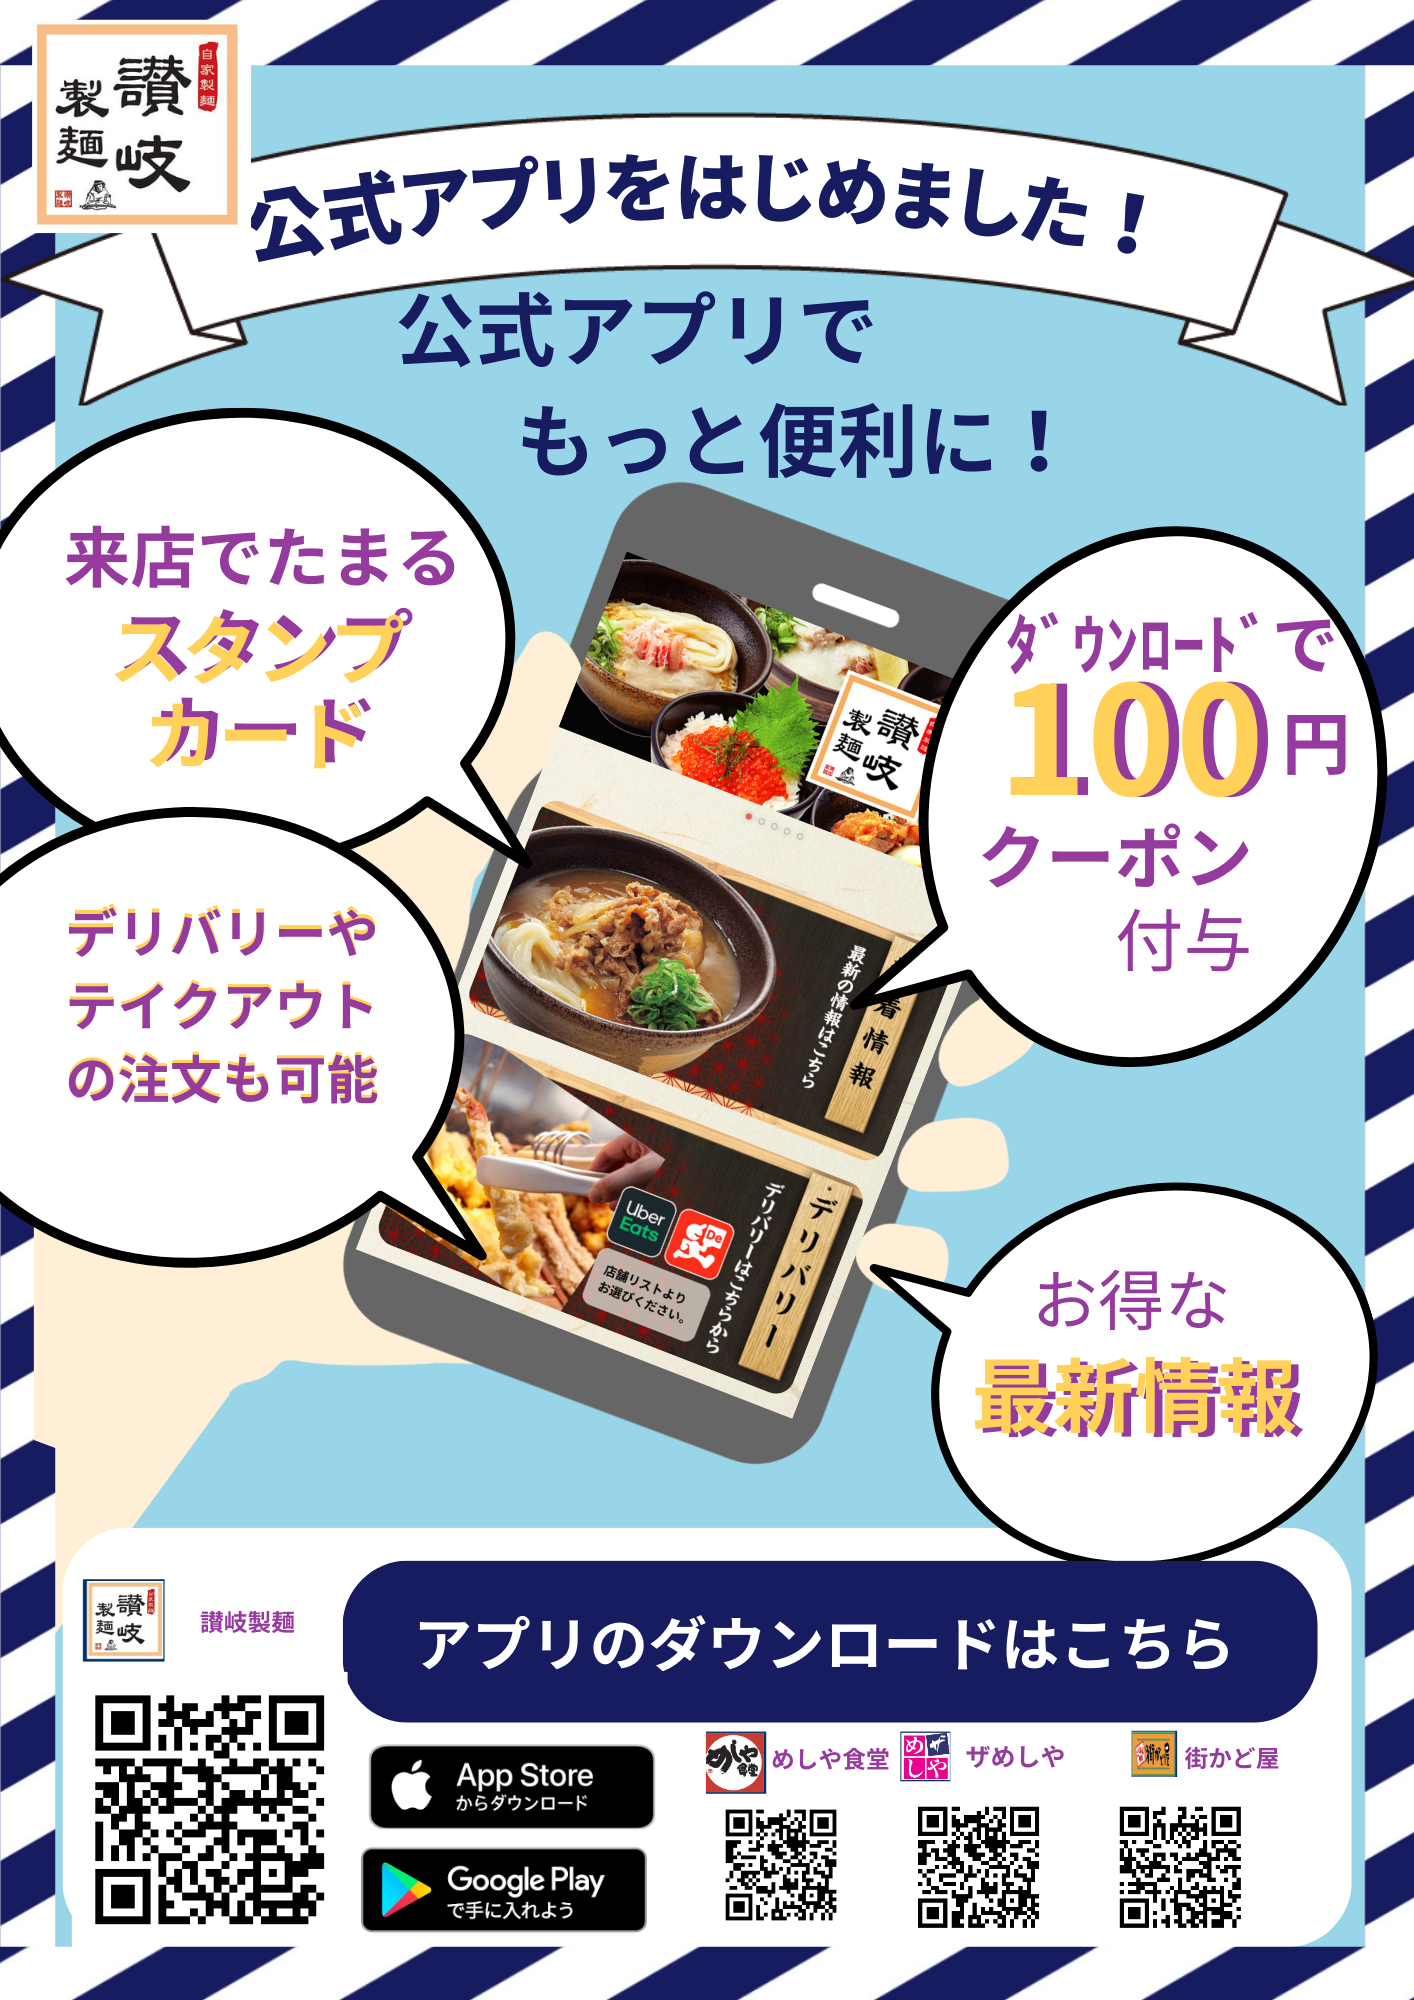 【讃岐製麺】公式アプリはじめました。